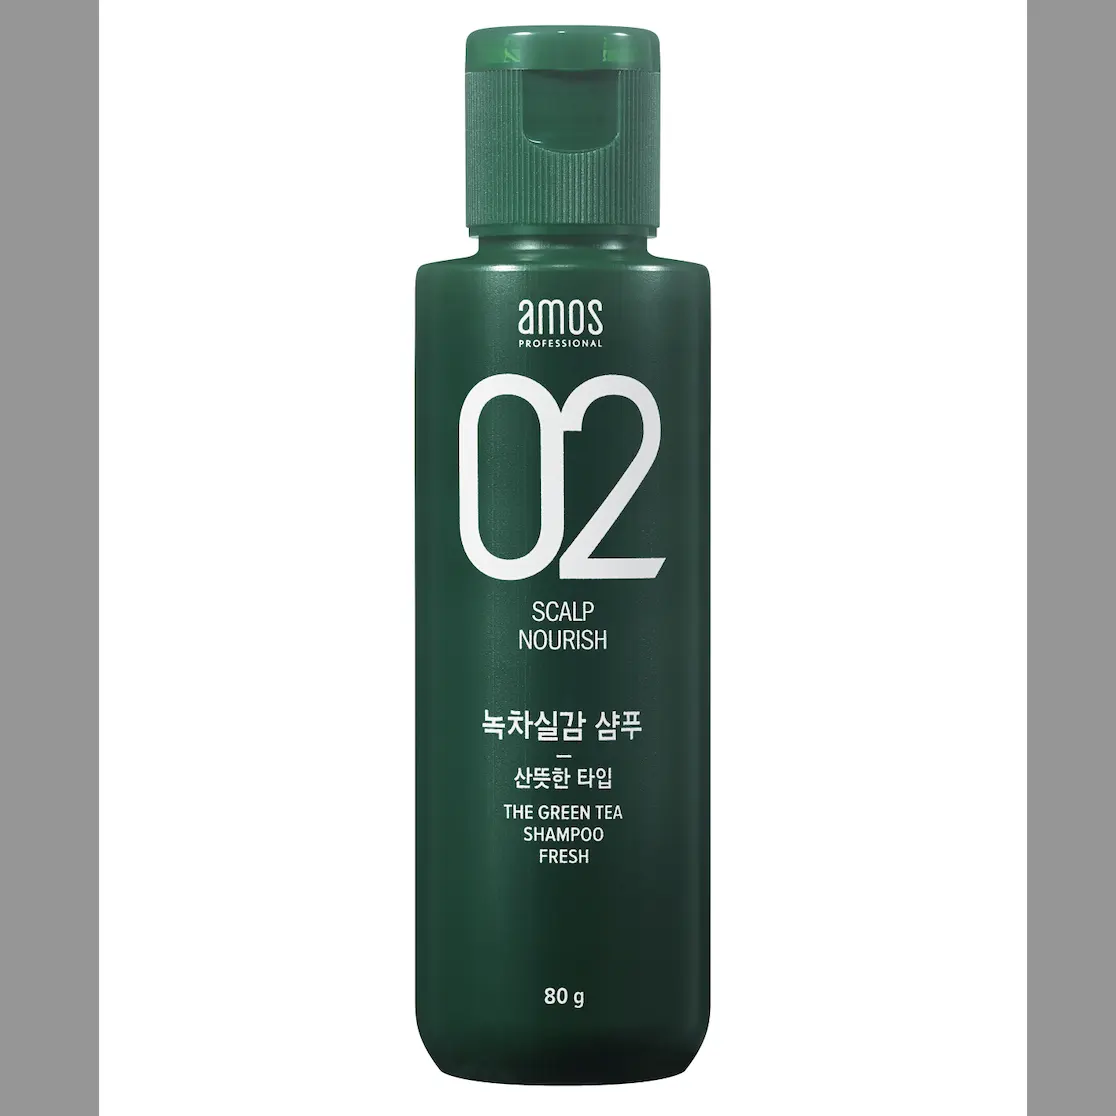 [Amos profissional] o shampoo greentea 80g antiqueda de cabelo cuidados e tratamento [marca coreana quente]